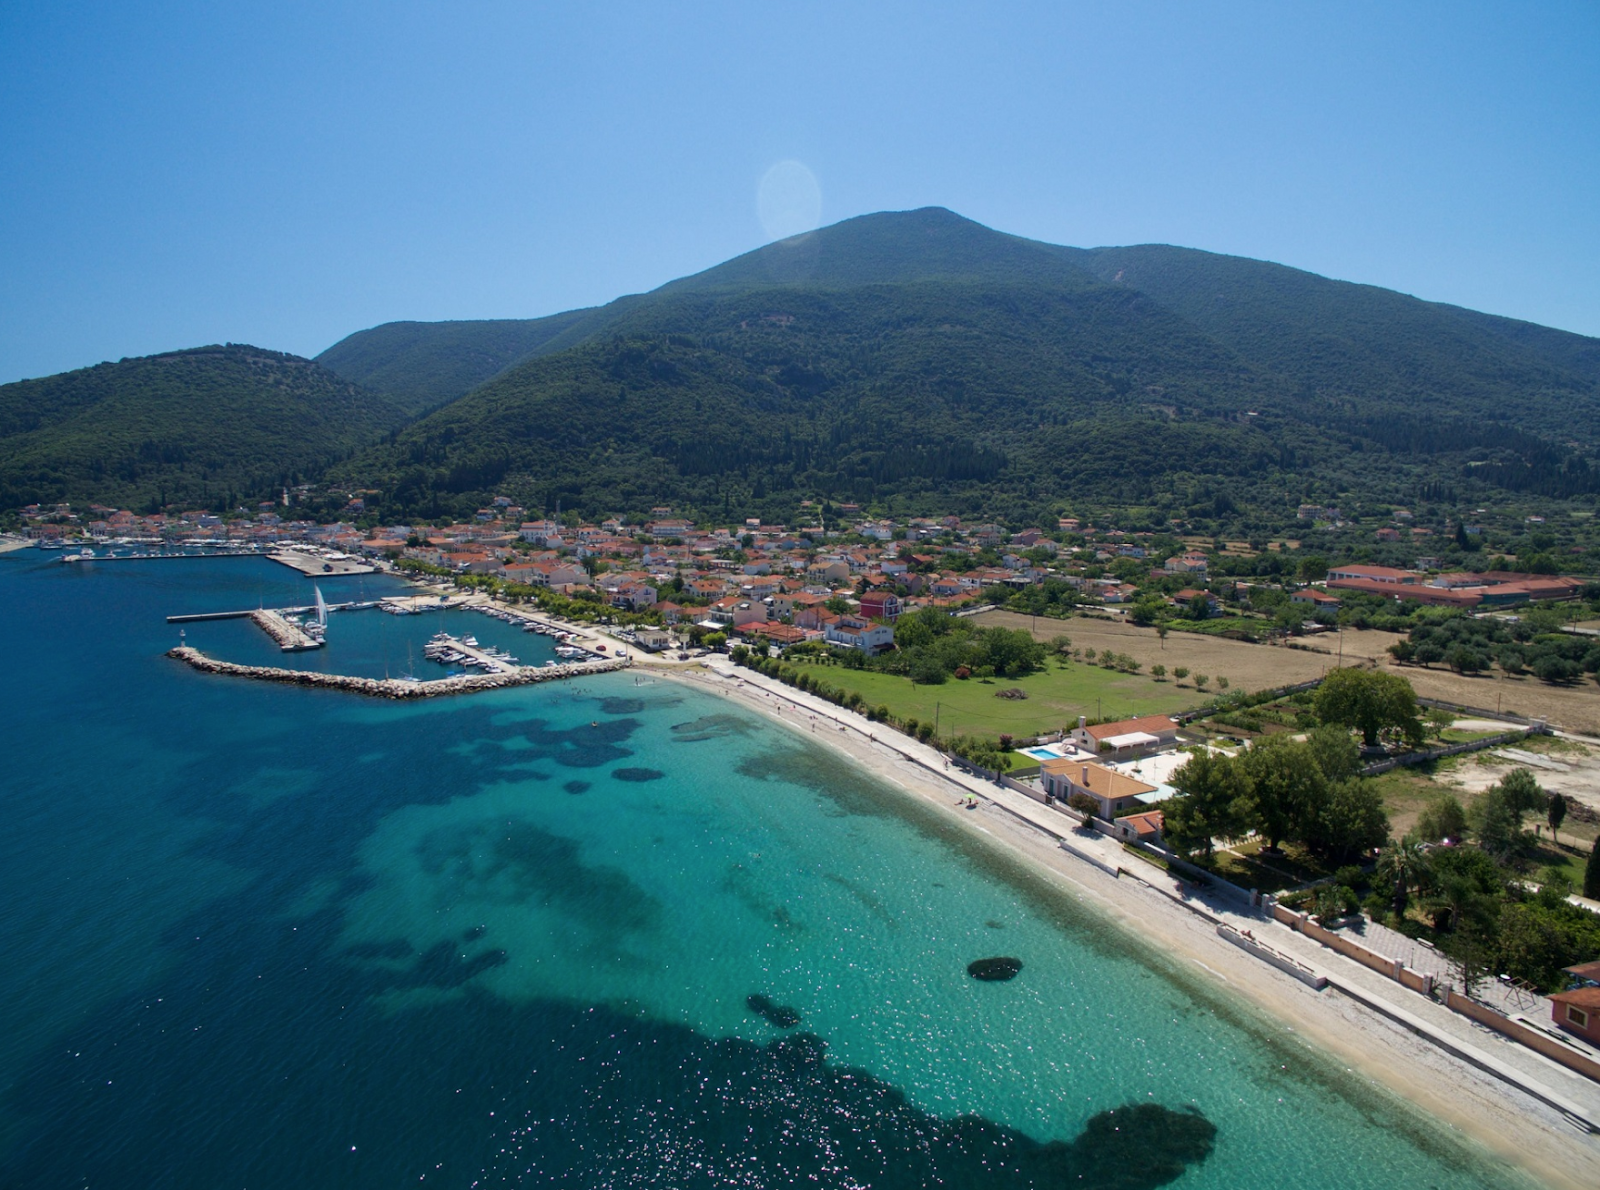 Photo de Karavomilos beach - endroit populaire parmi les connaisseurs de la détente